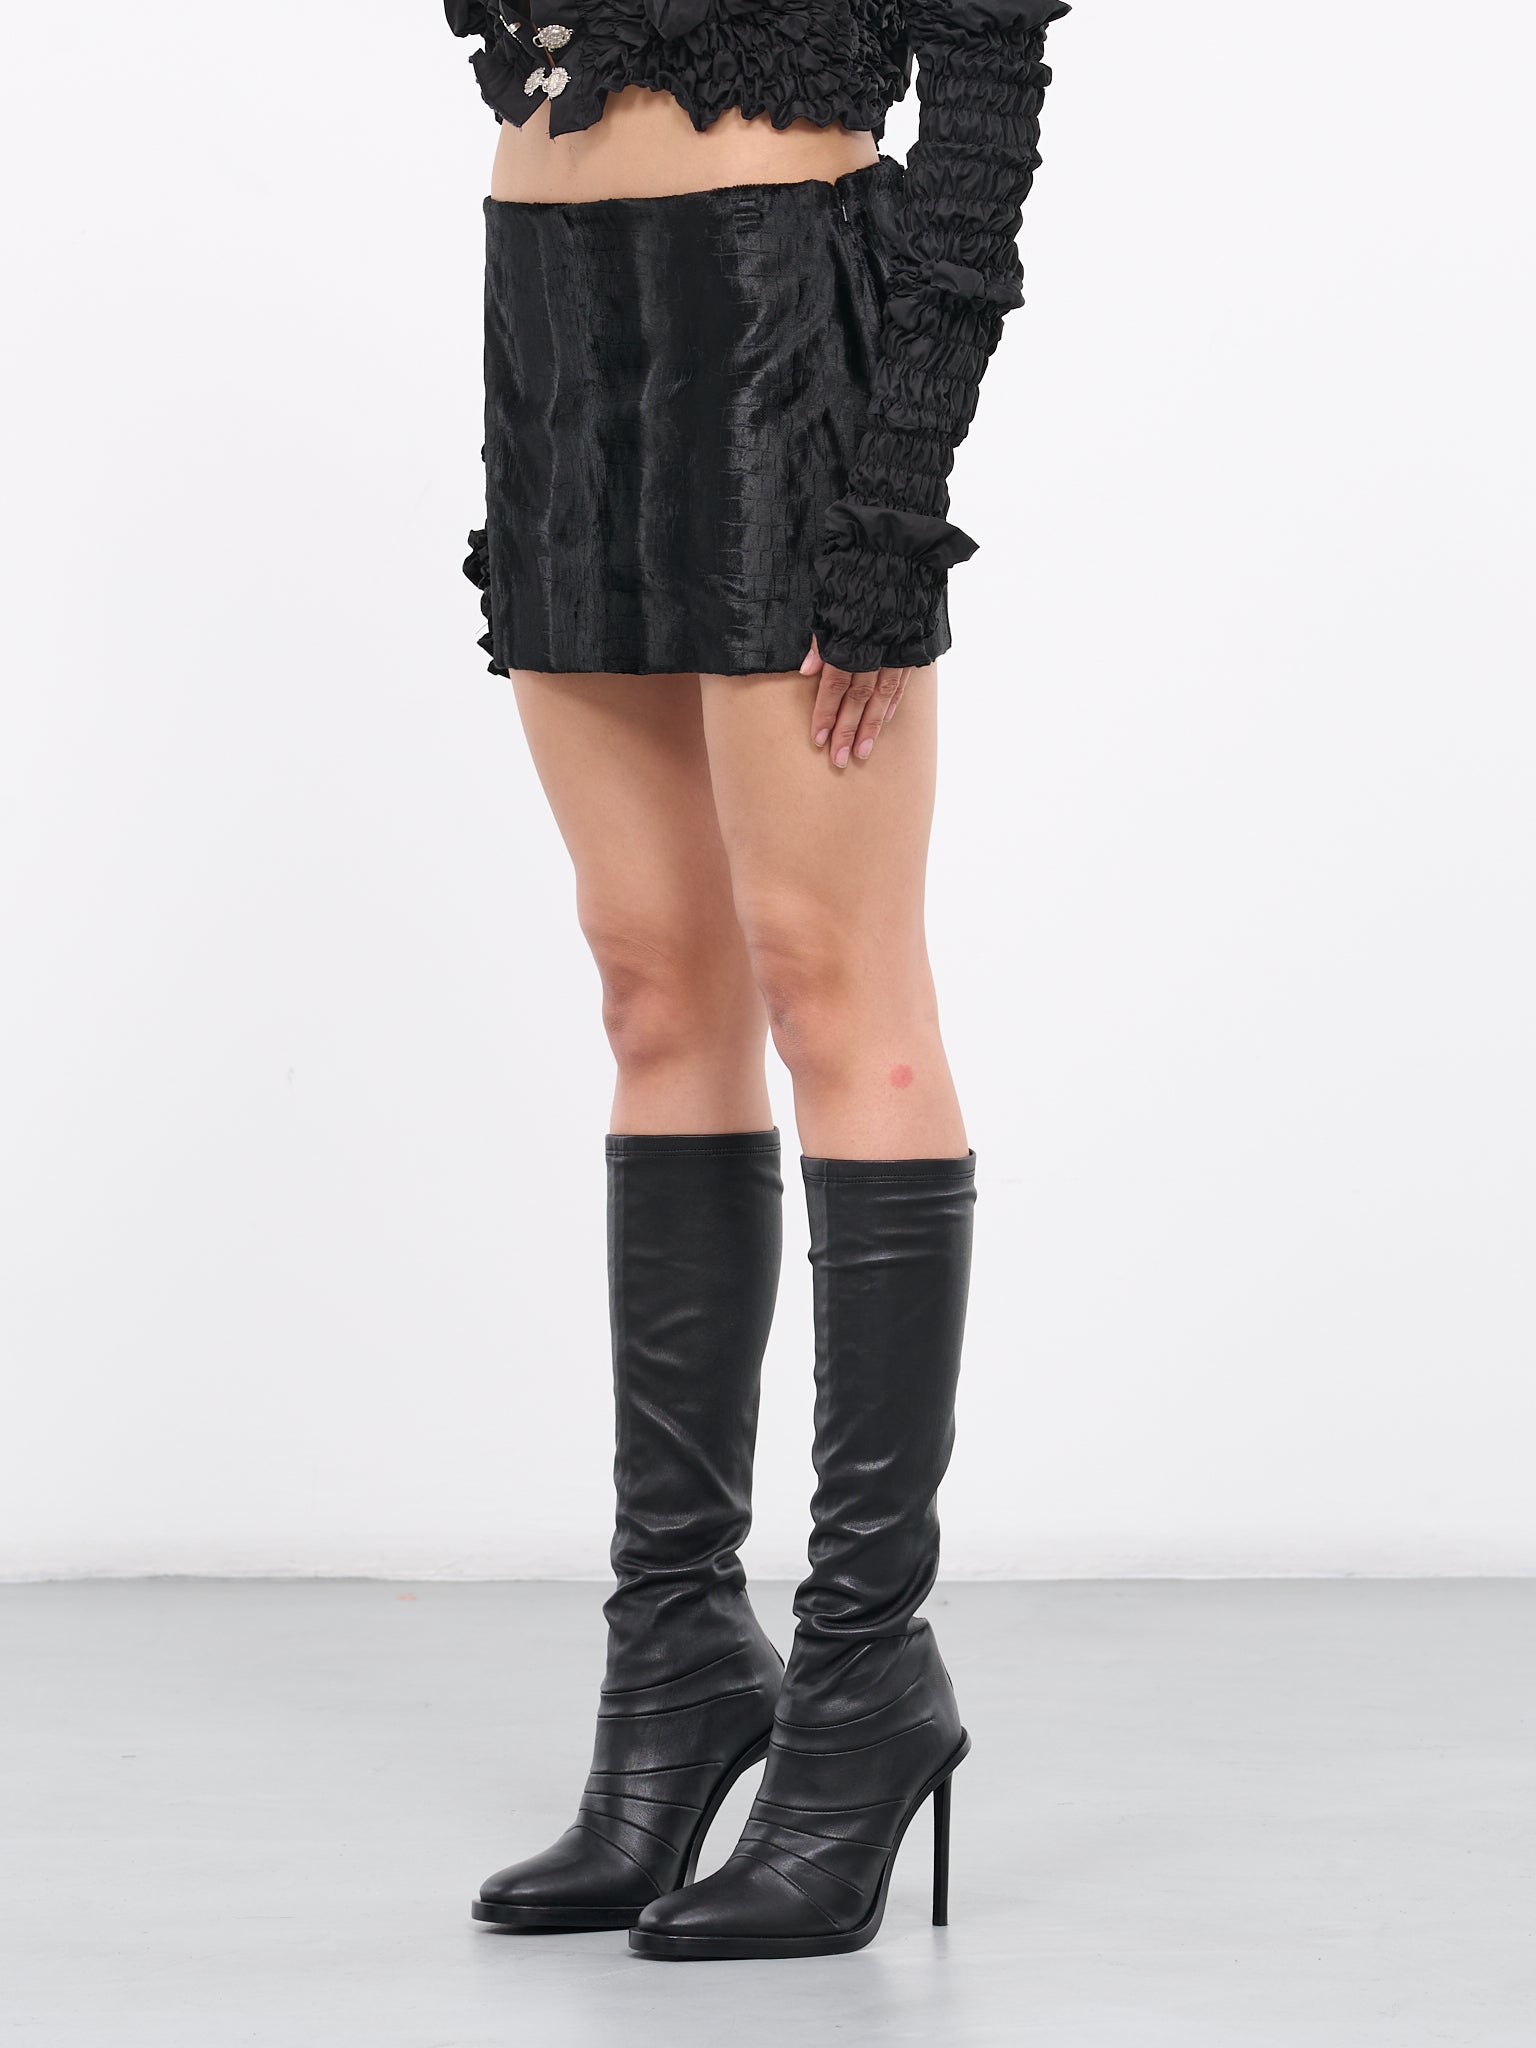 Corsette Skirt (CORSETTE-SKIRT-BLACK)